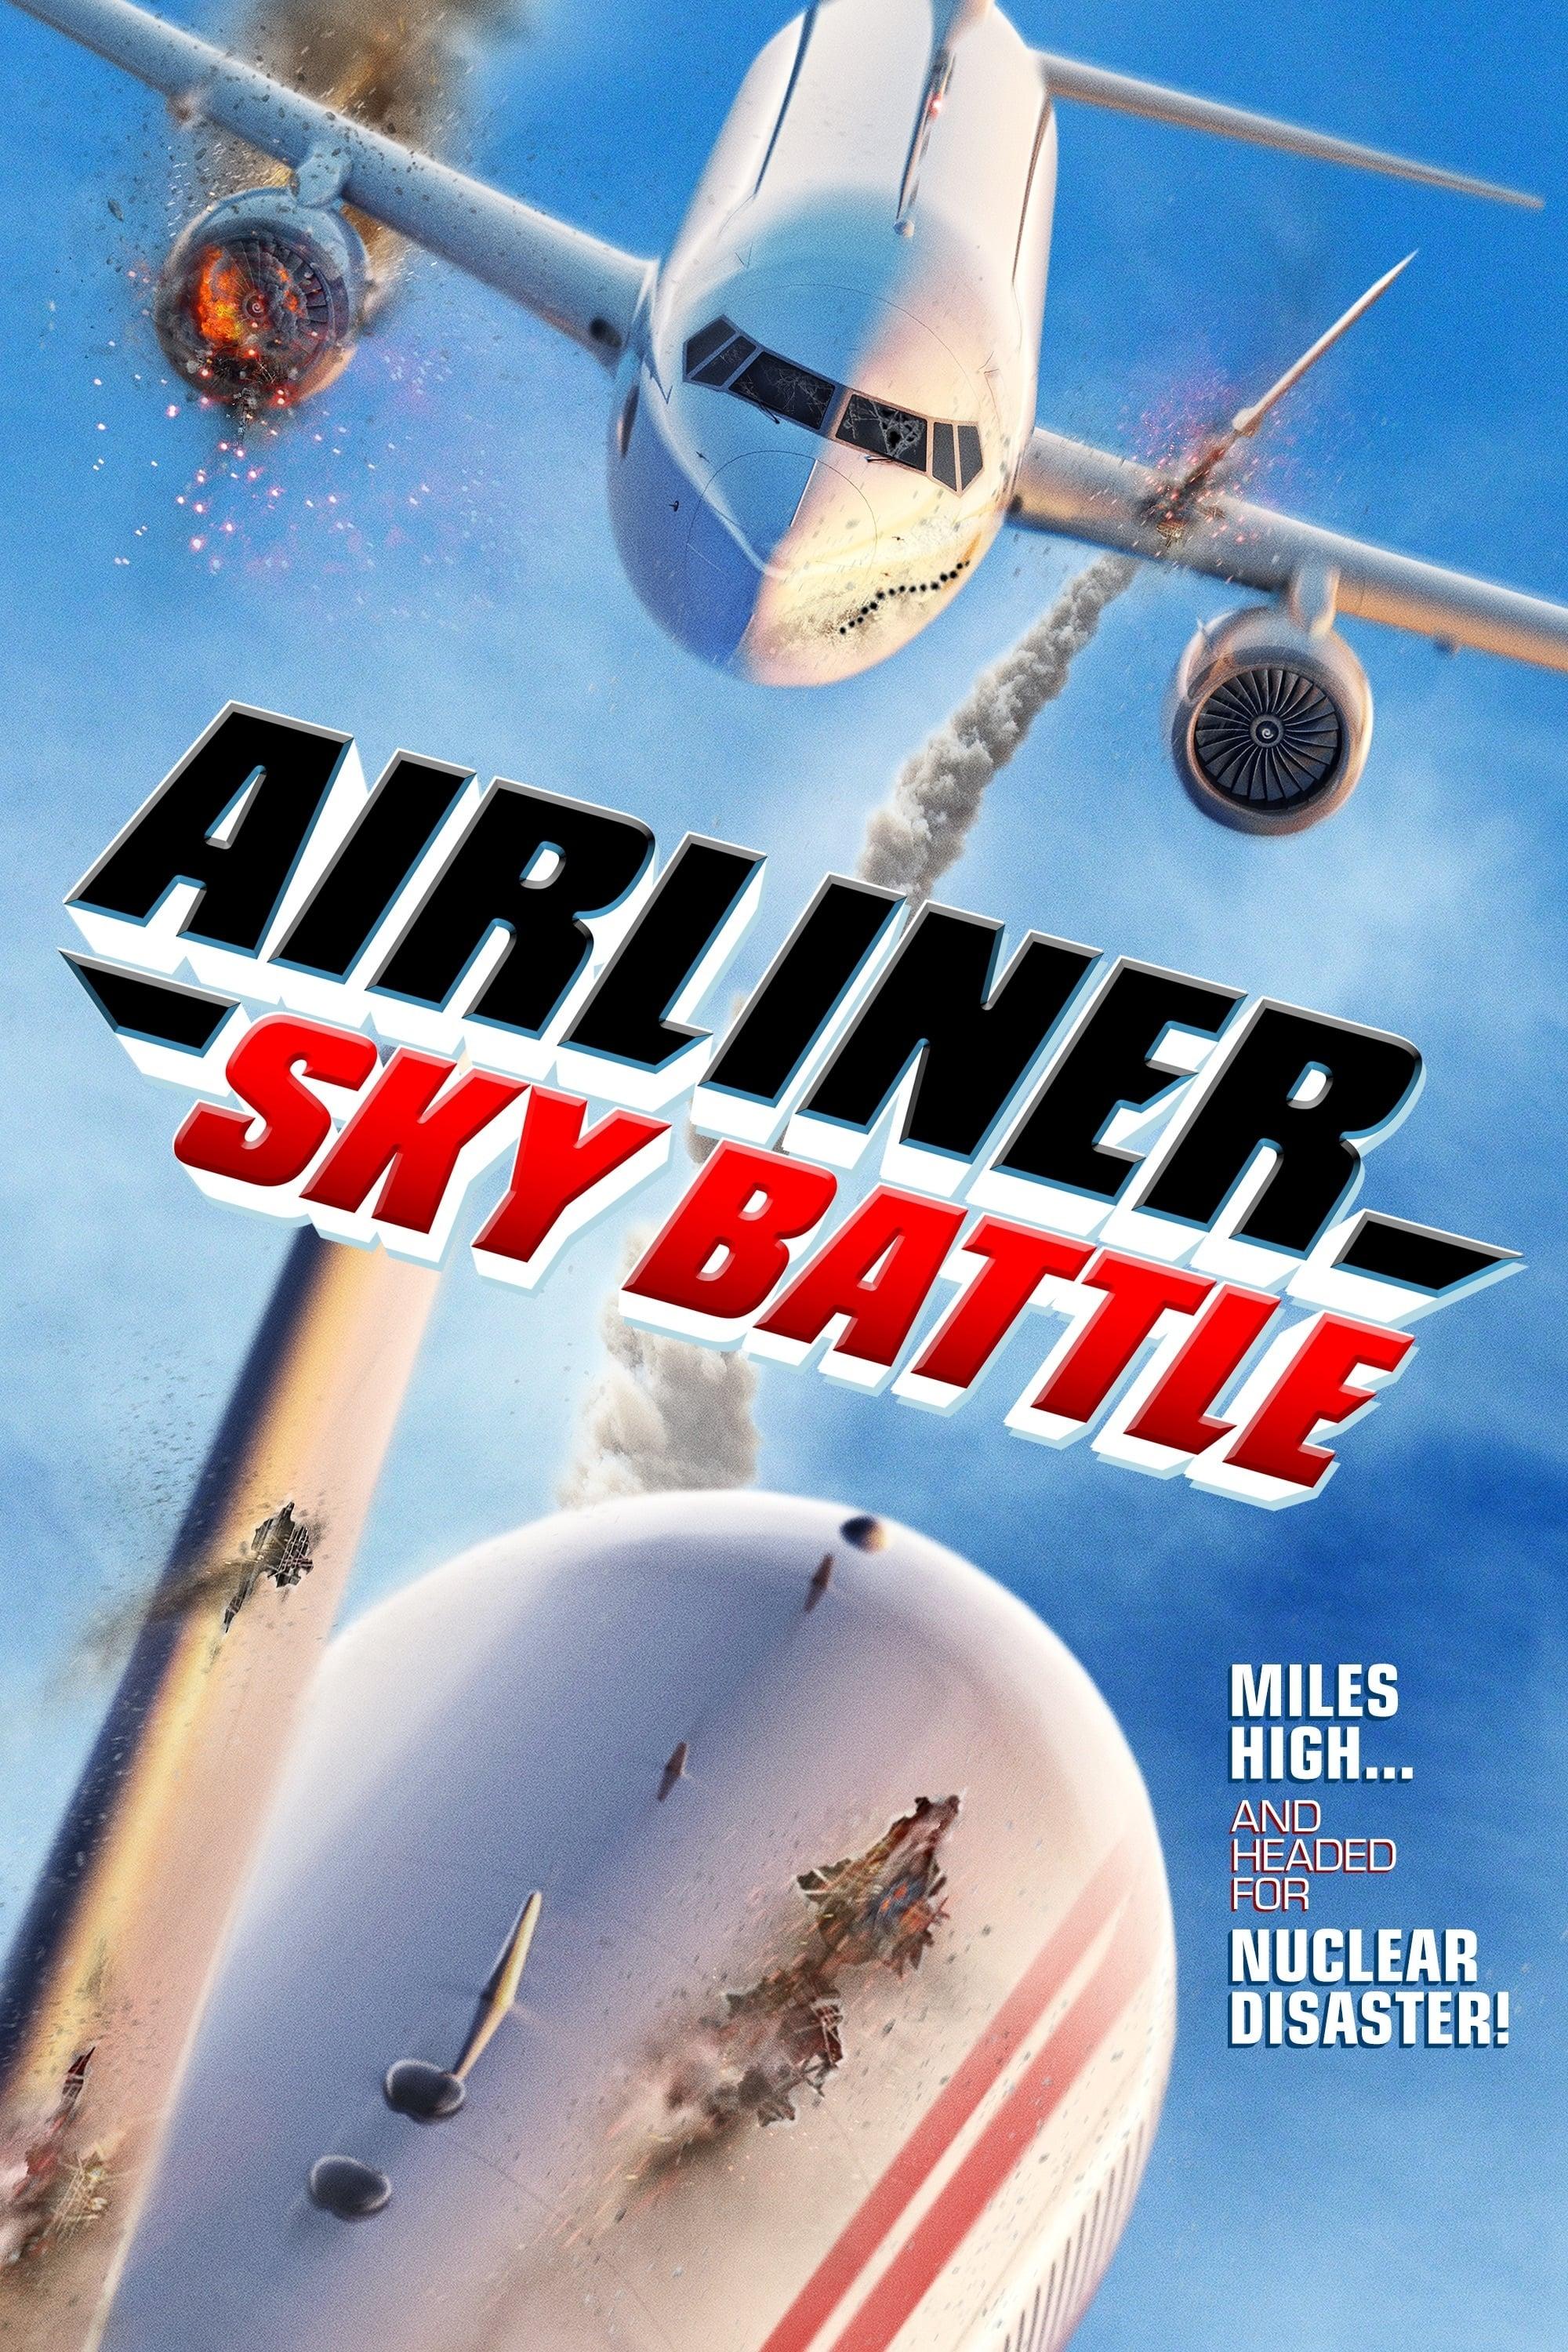 Airliner Sky Battle poster